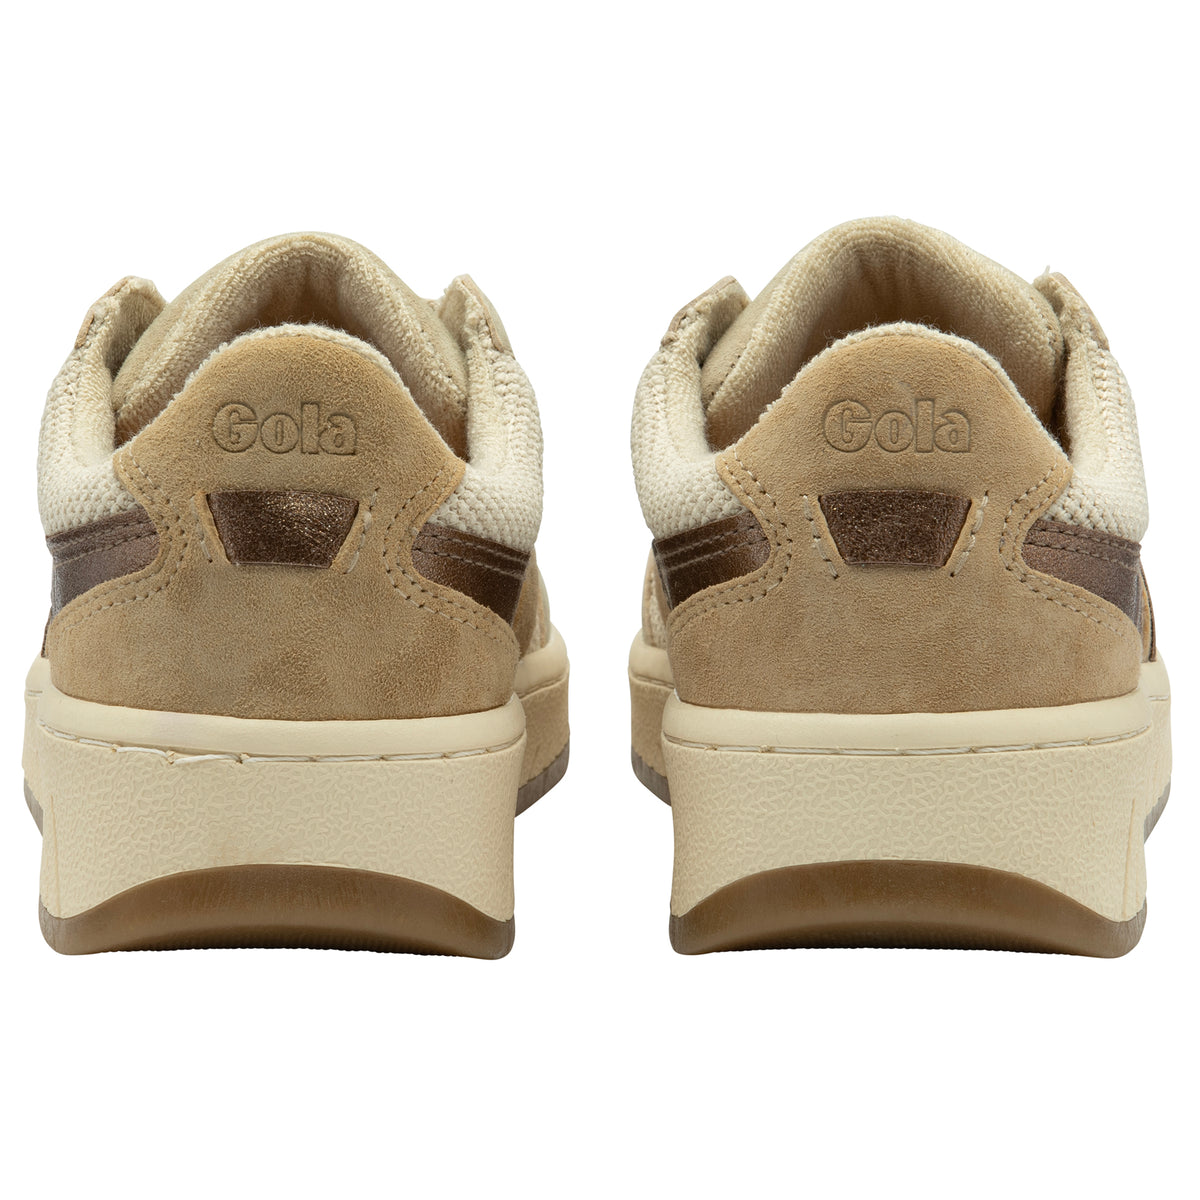 Gola Grandslam Mode Sneakers